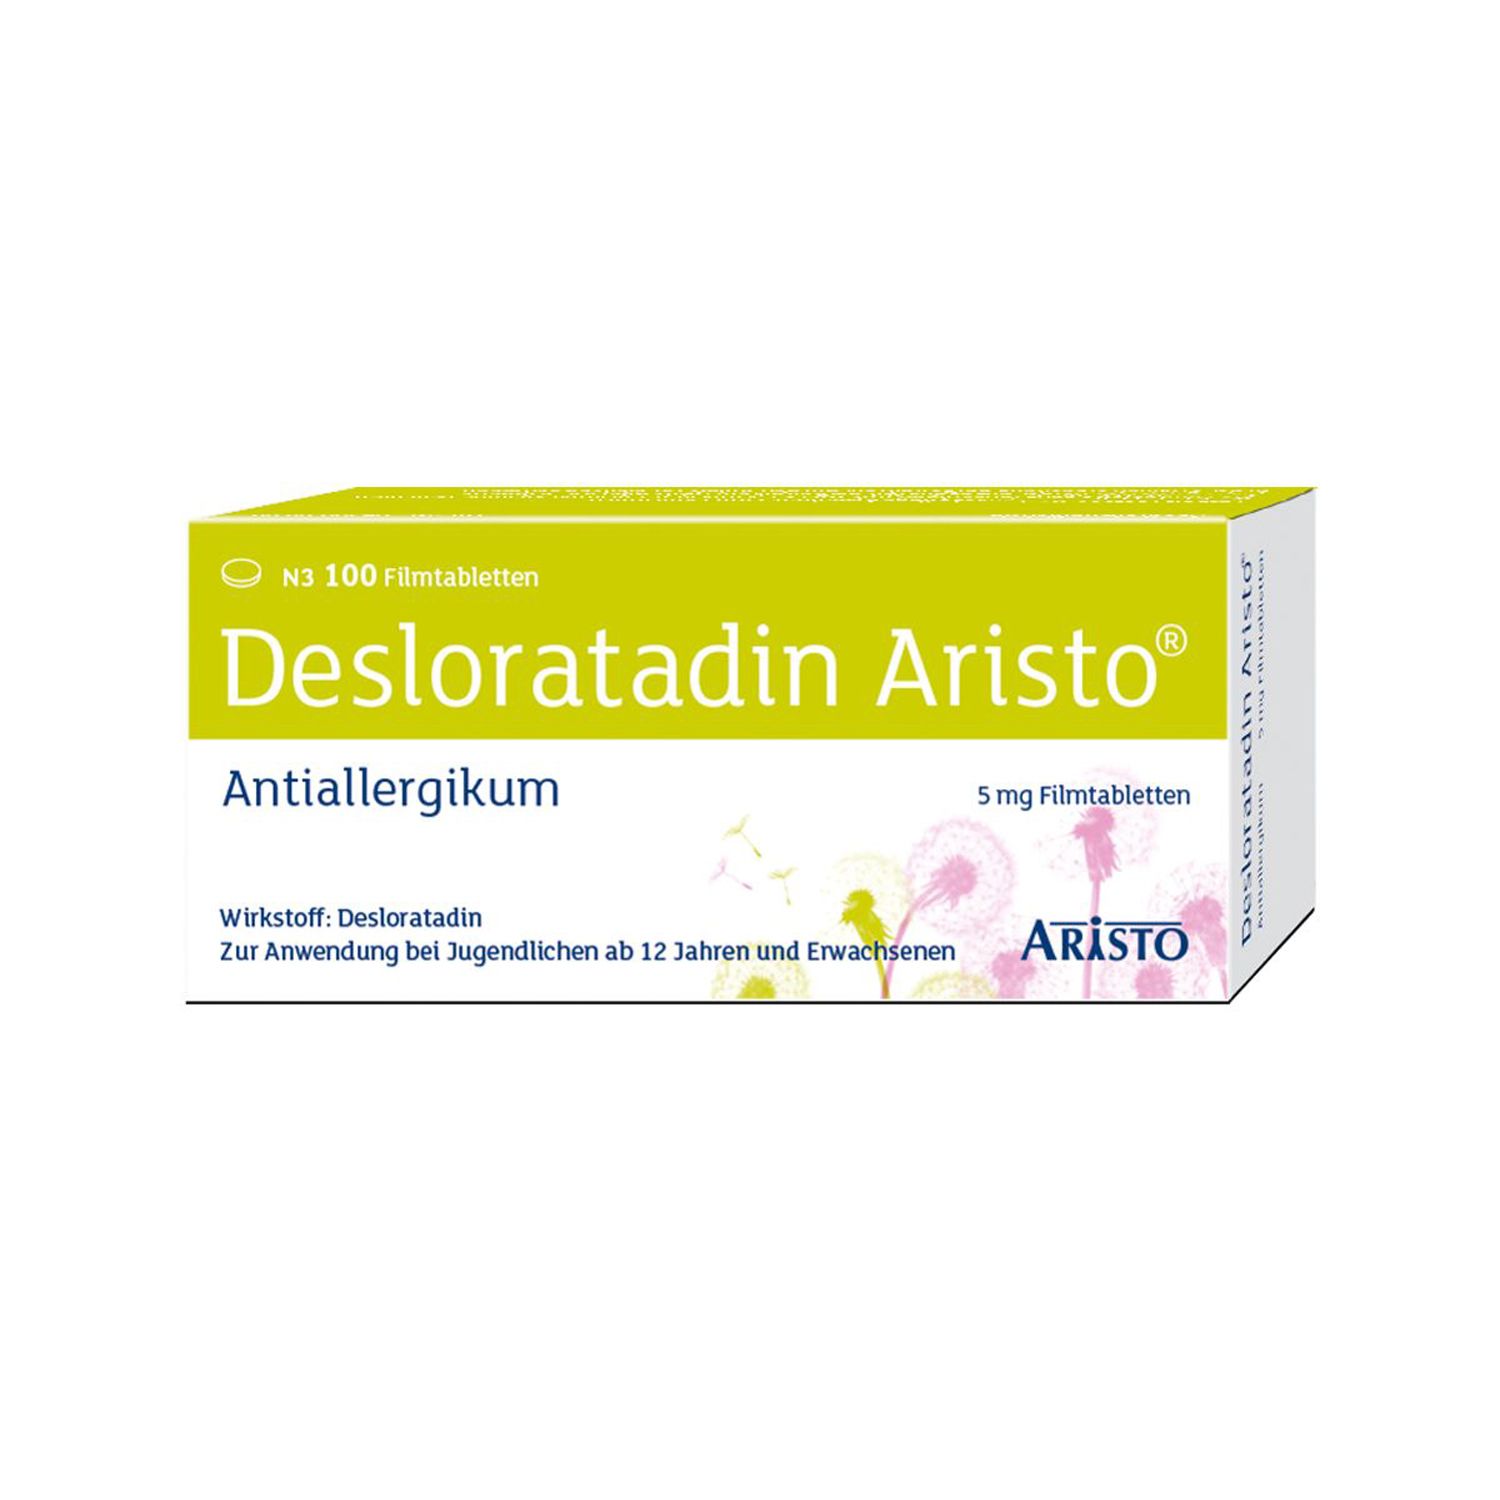 Desloratadin Aristo® 5 mg